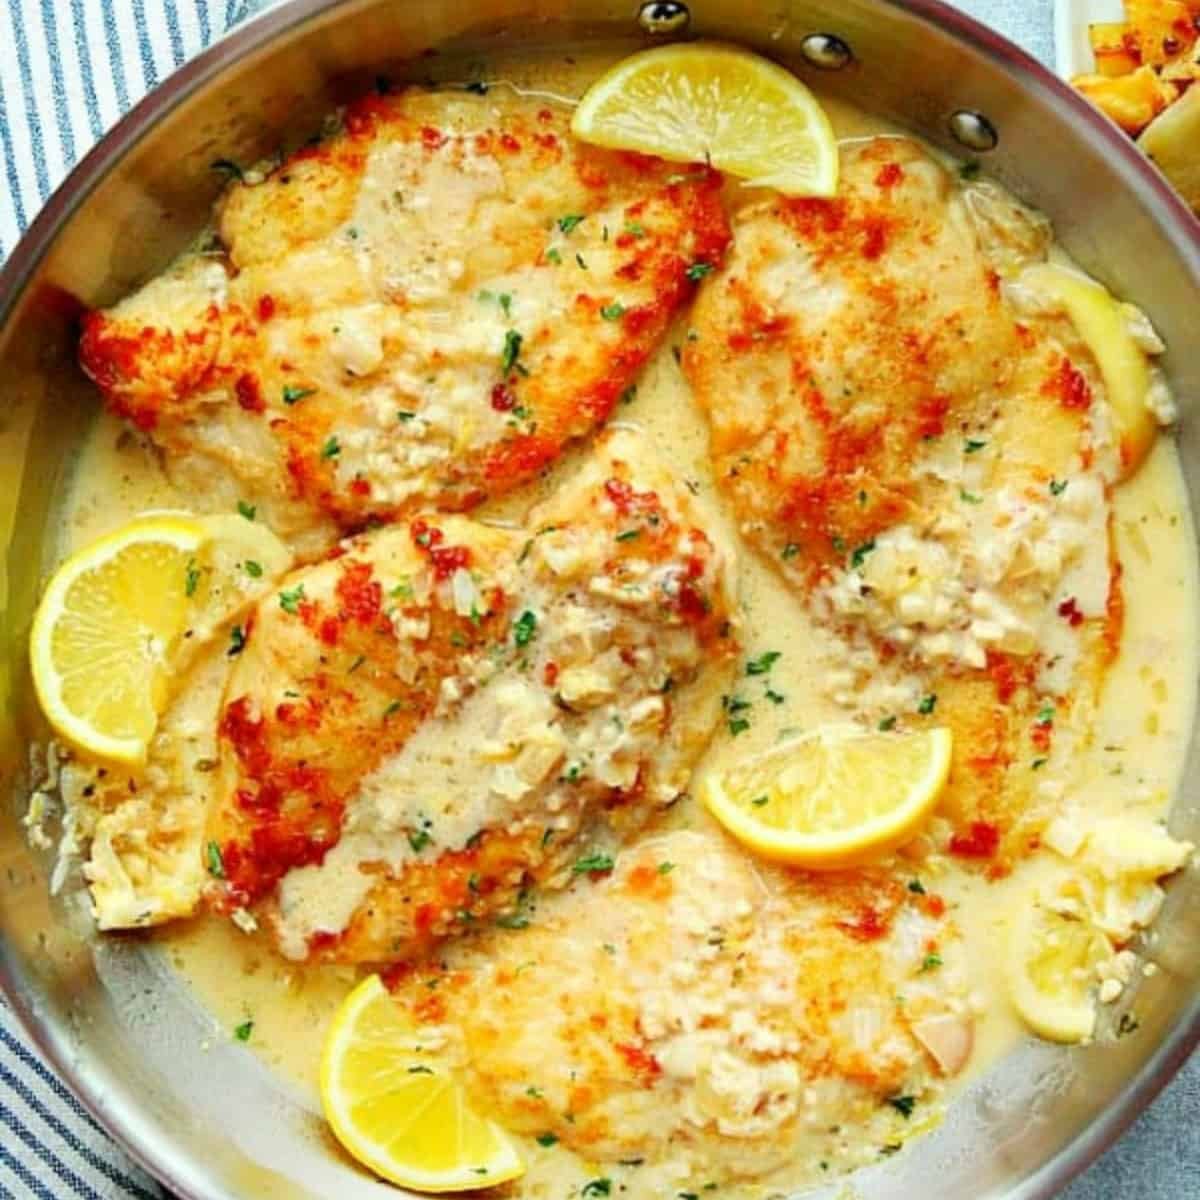 Juicy lemon and garlic chicken recipe